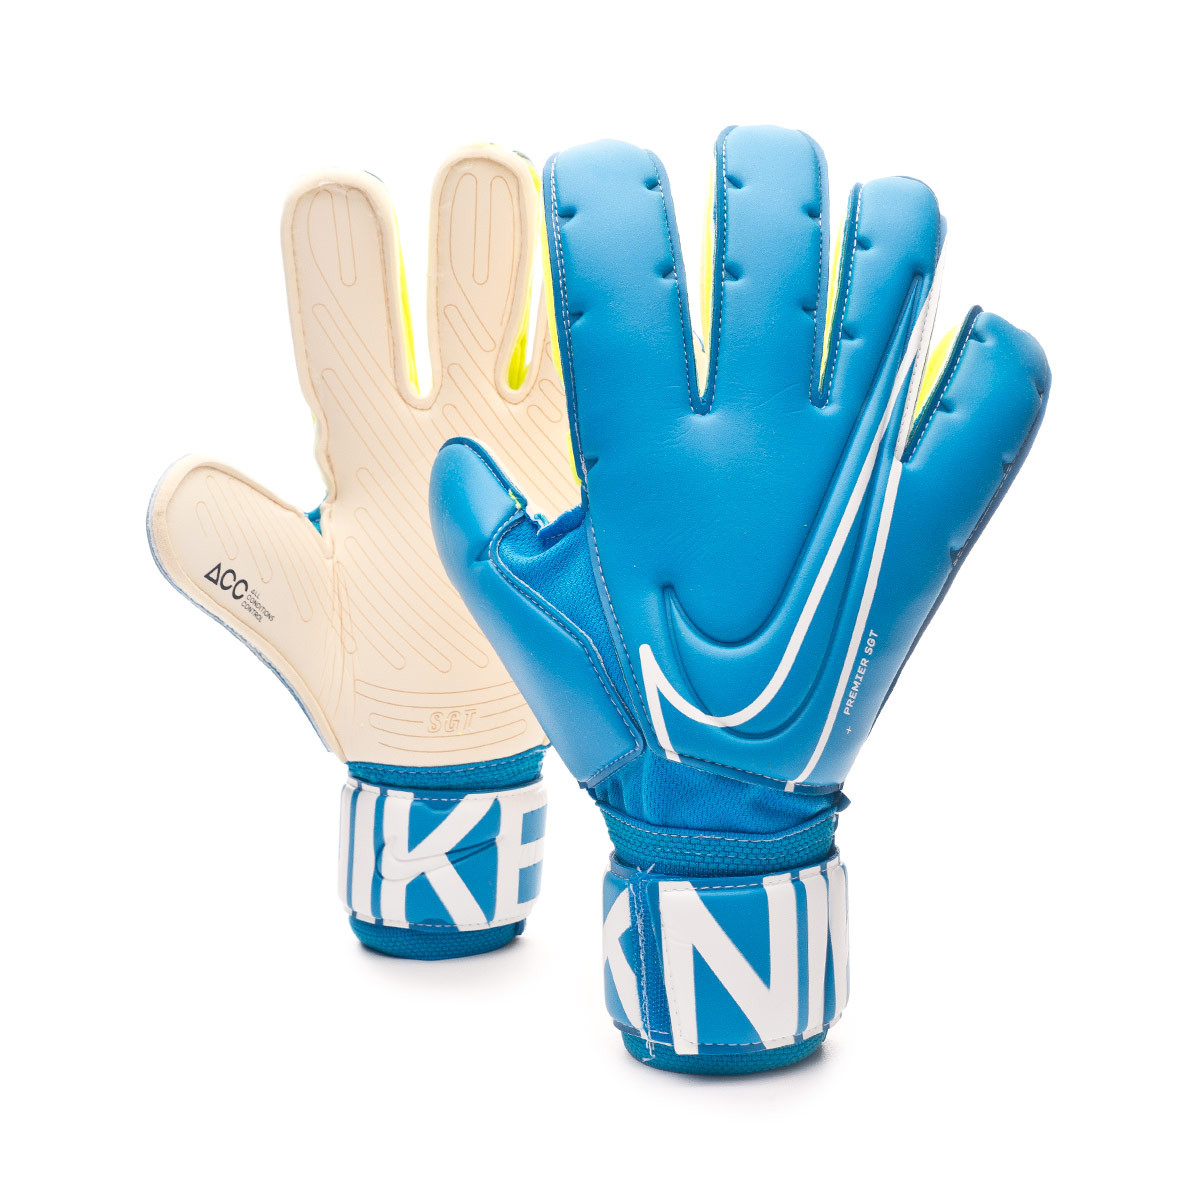 new nike gloves